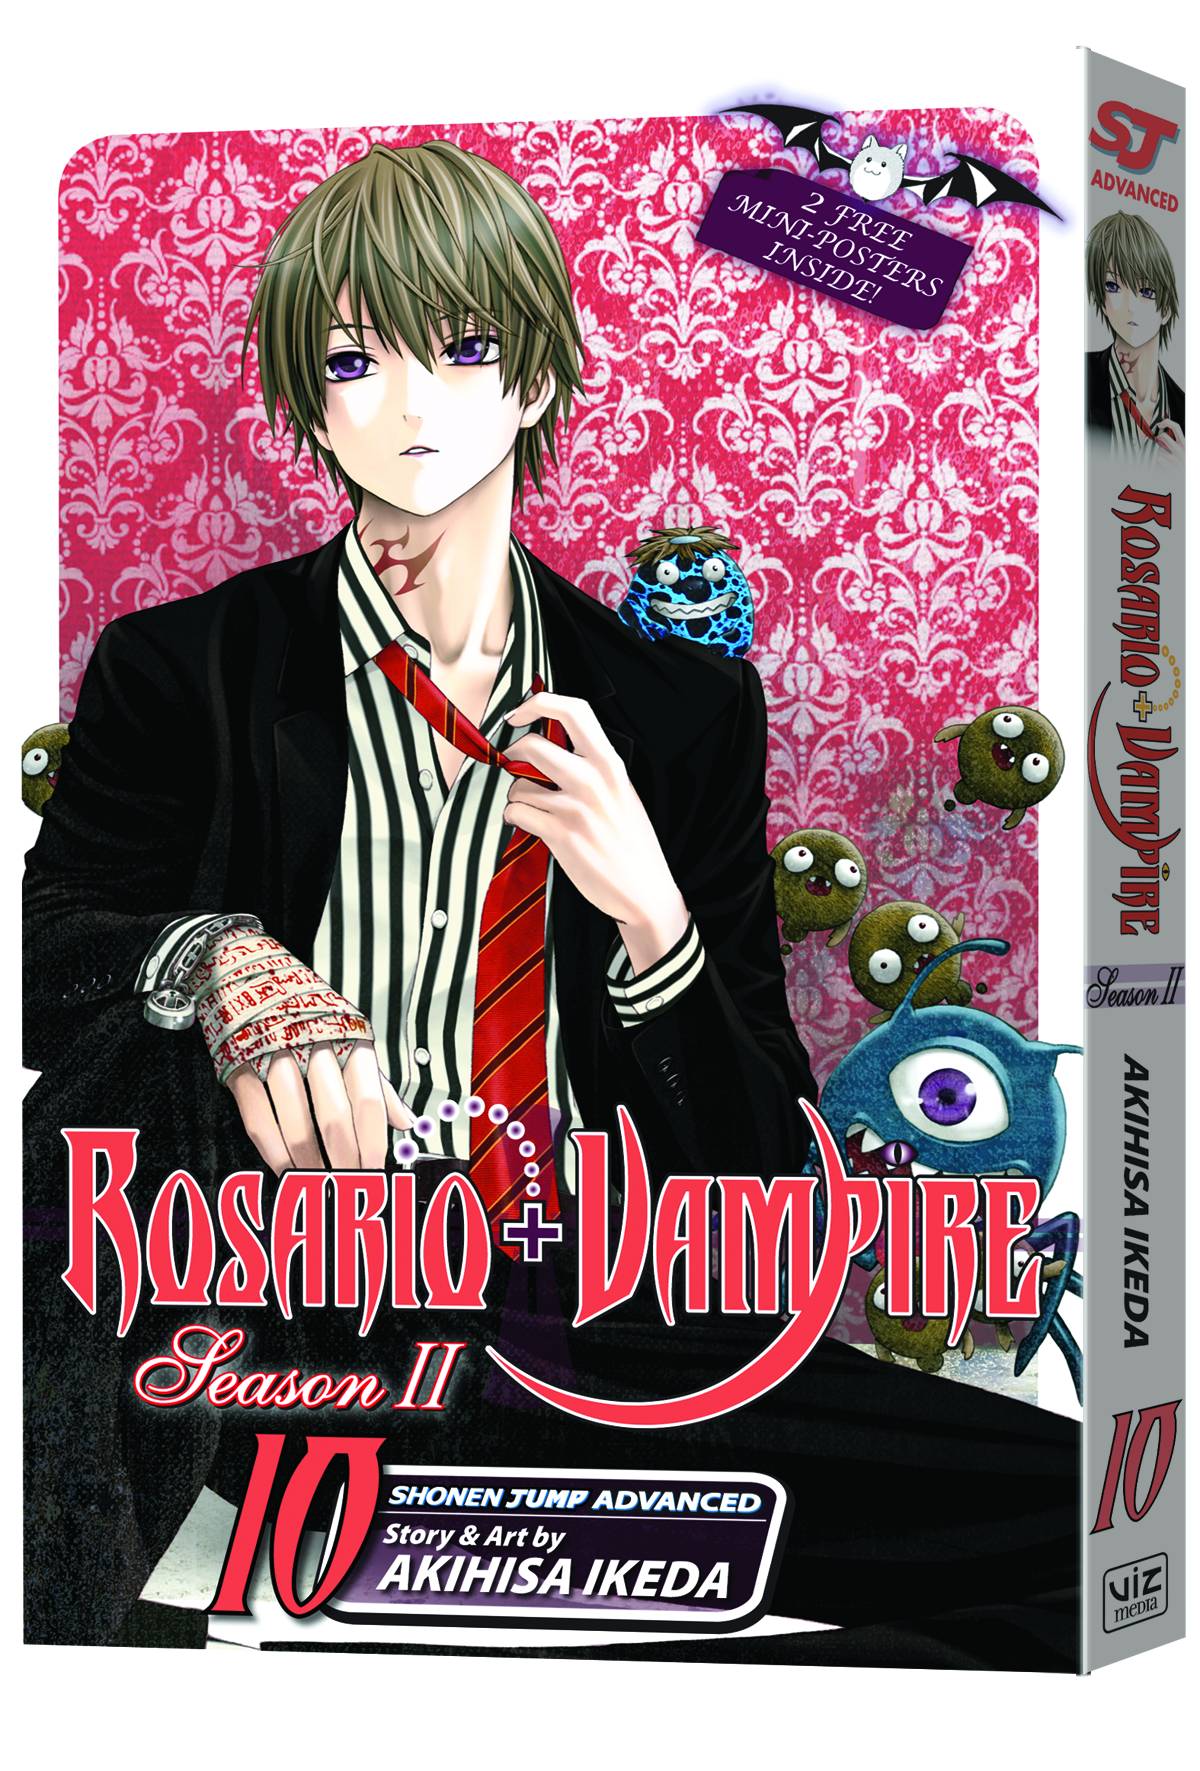 Rosario Vampire Season II Manga Volume 10